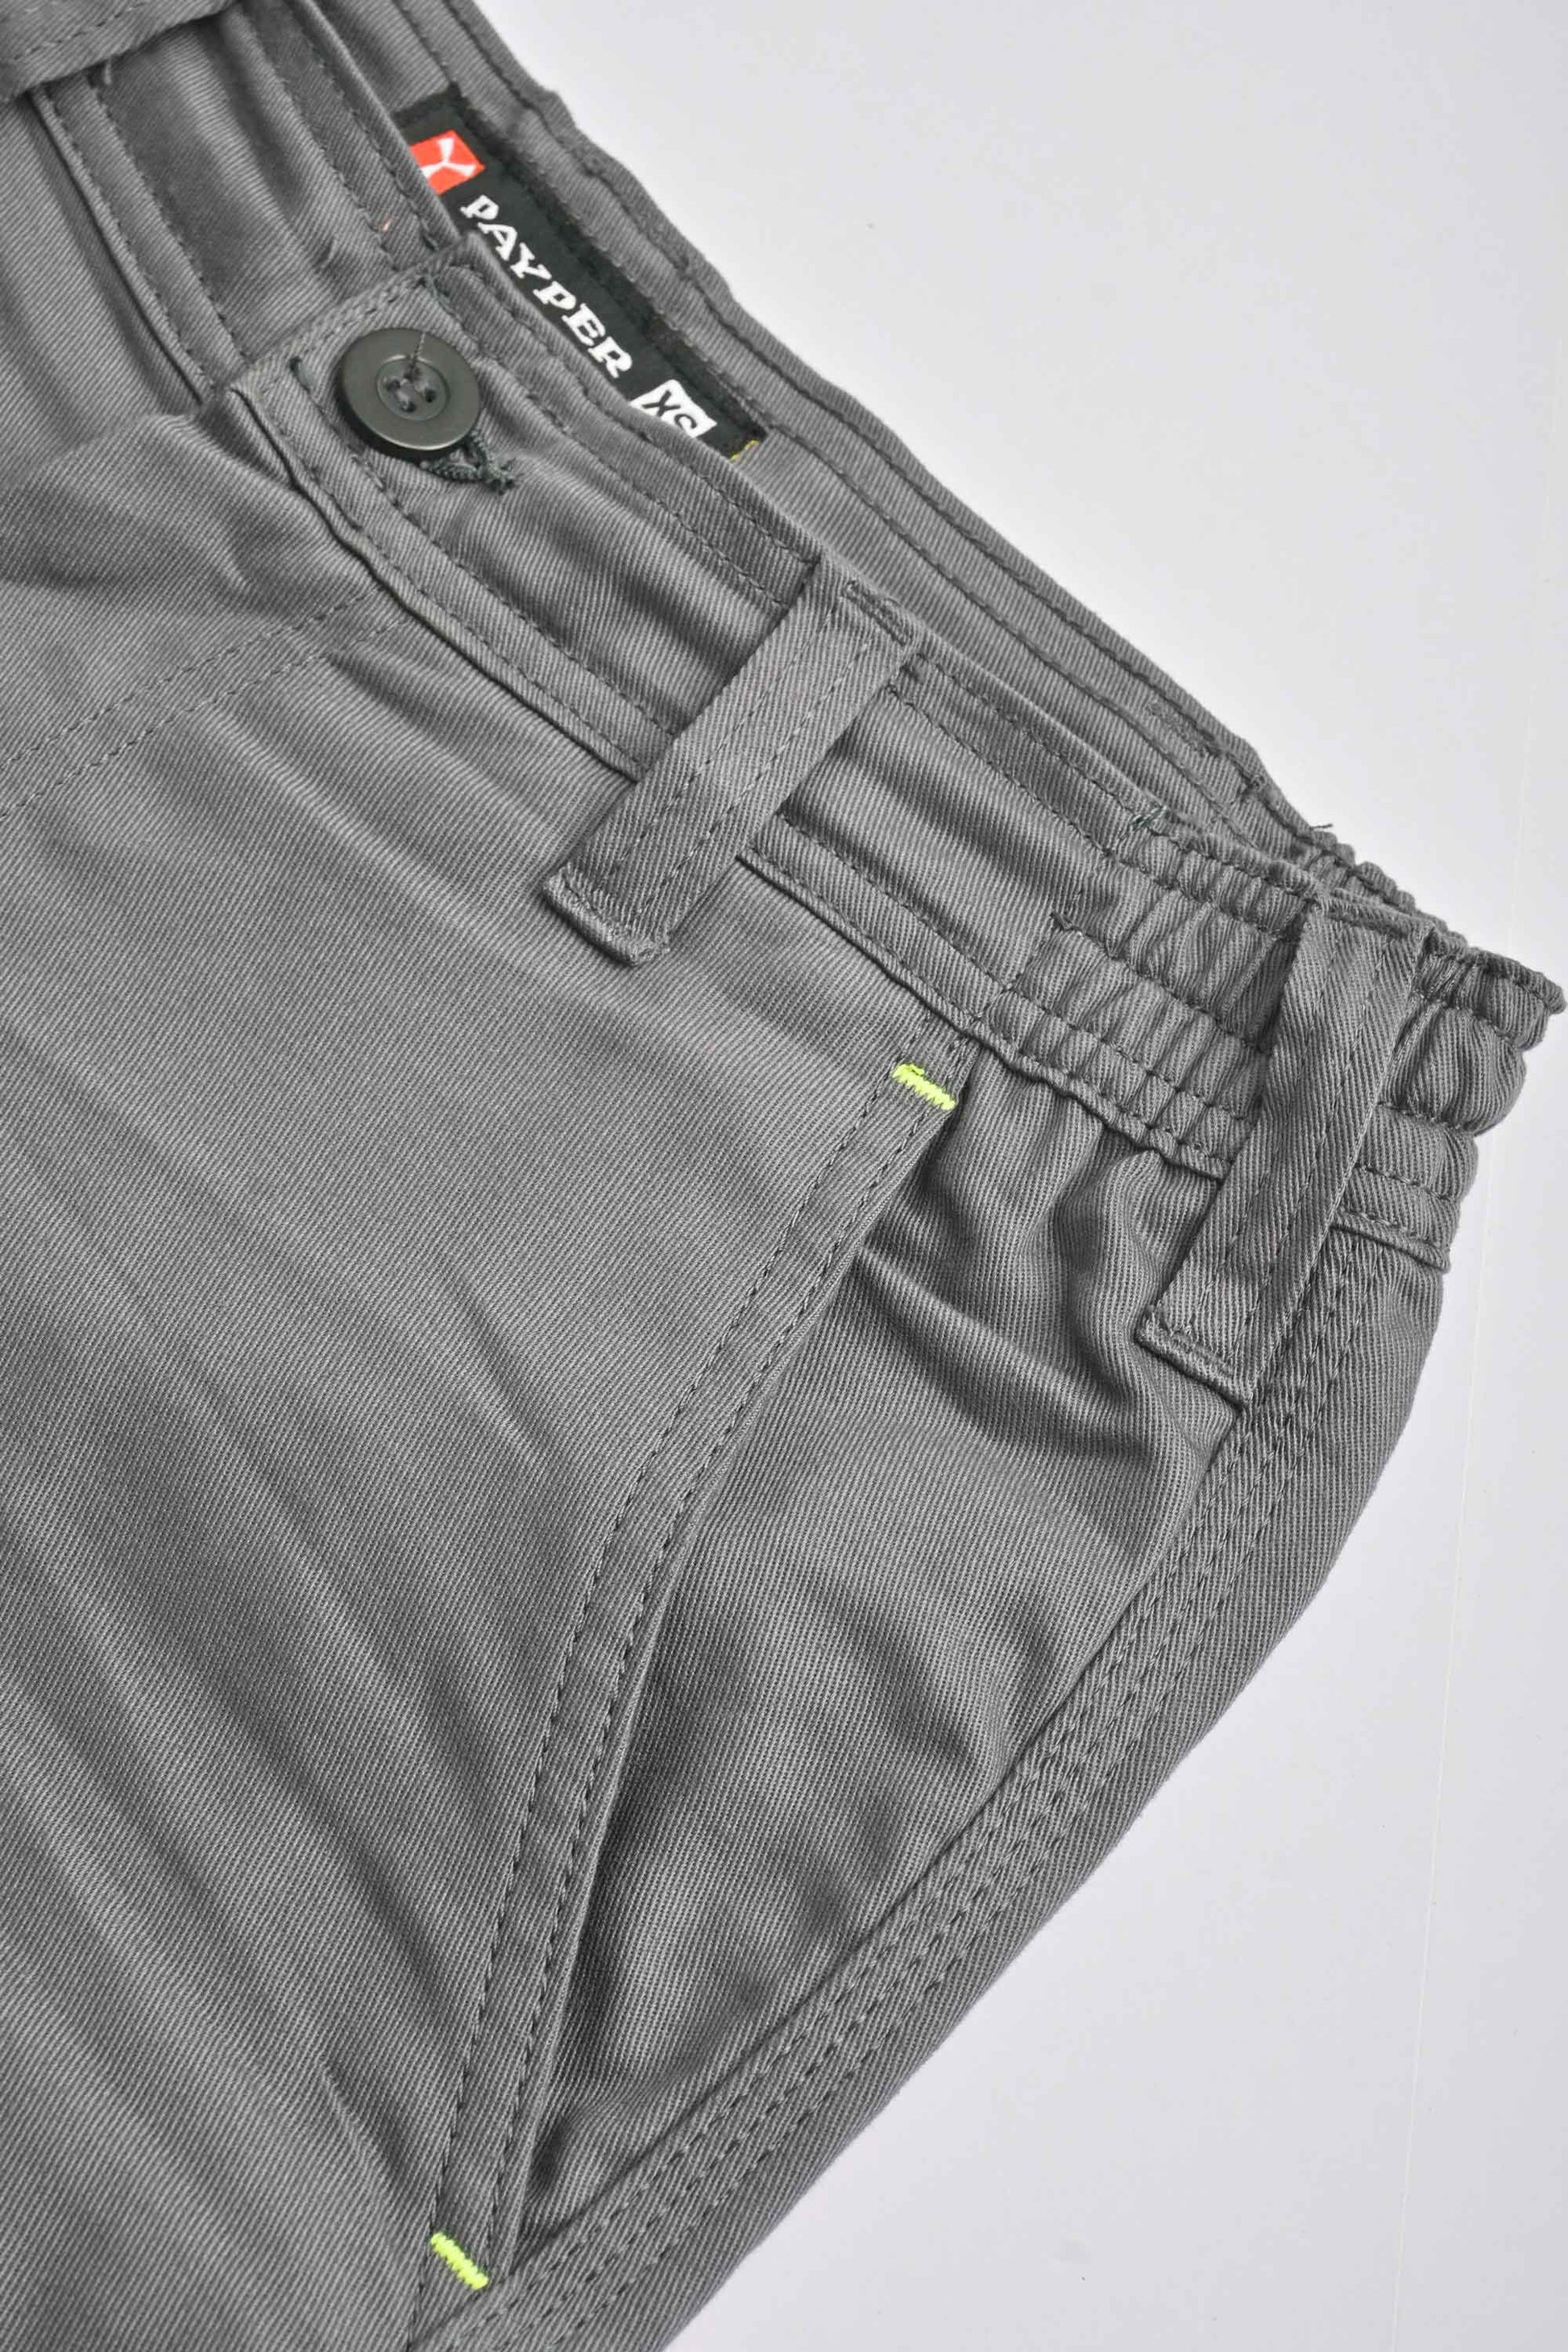 Payper Men's Hasselt Cargo Pants Men's Cargo Pants HAS Apparel 